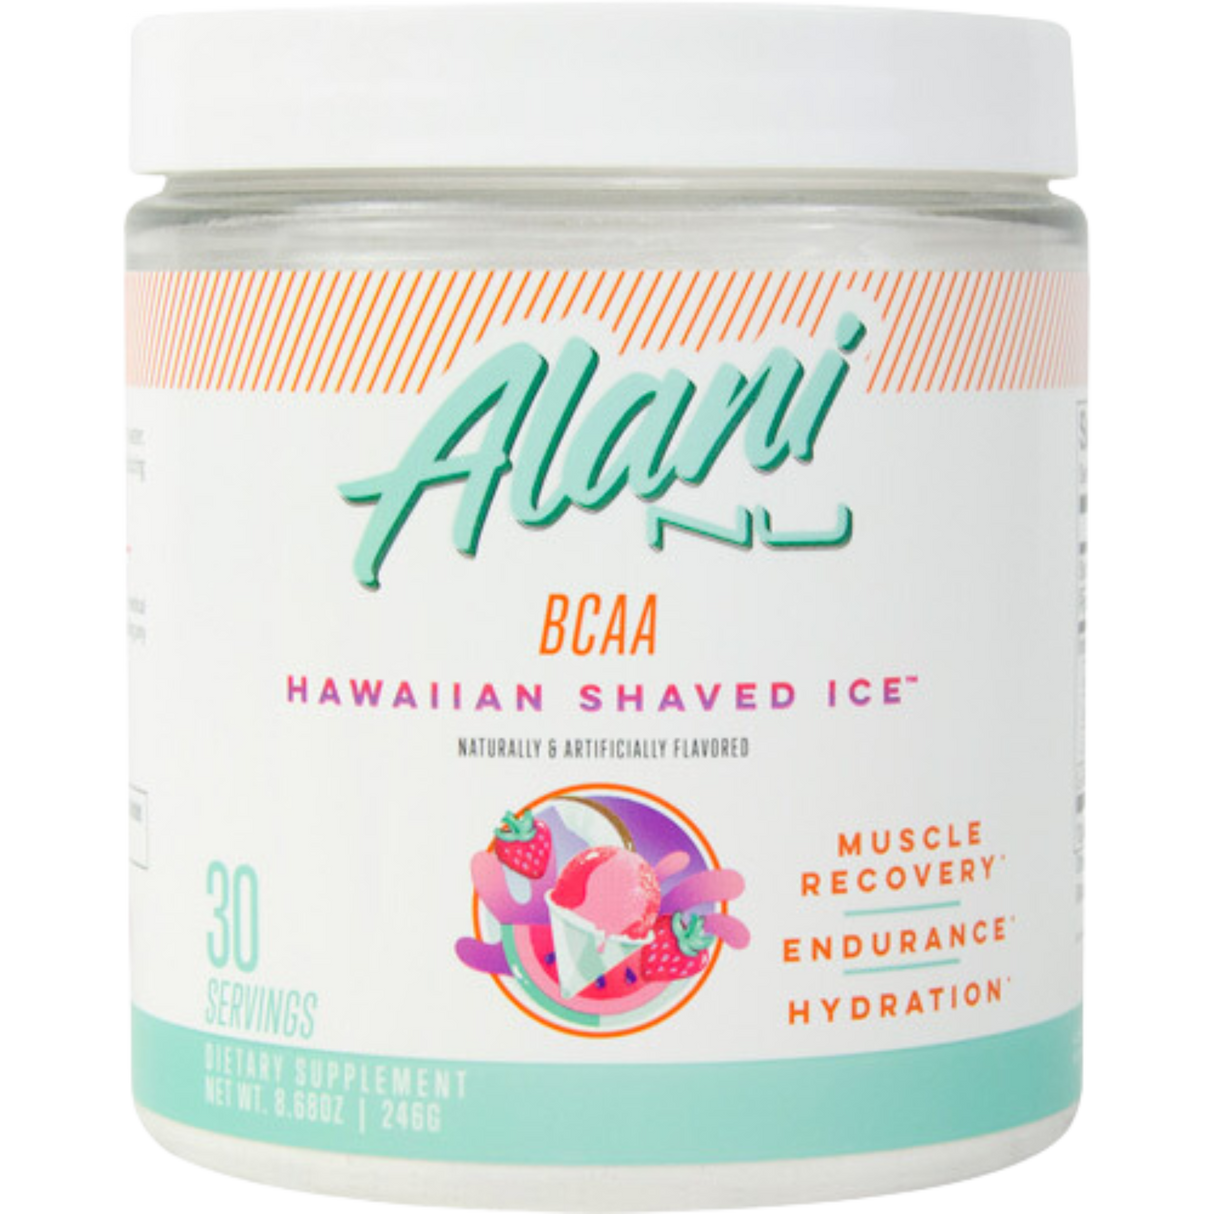 Alani Nu BCAA - Kingpin Supplements 